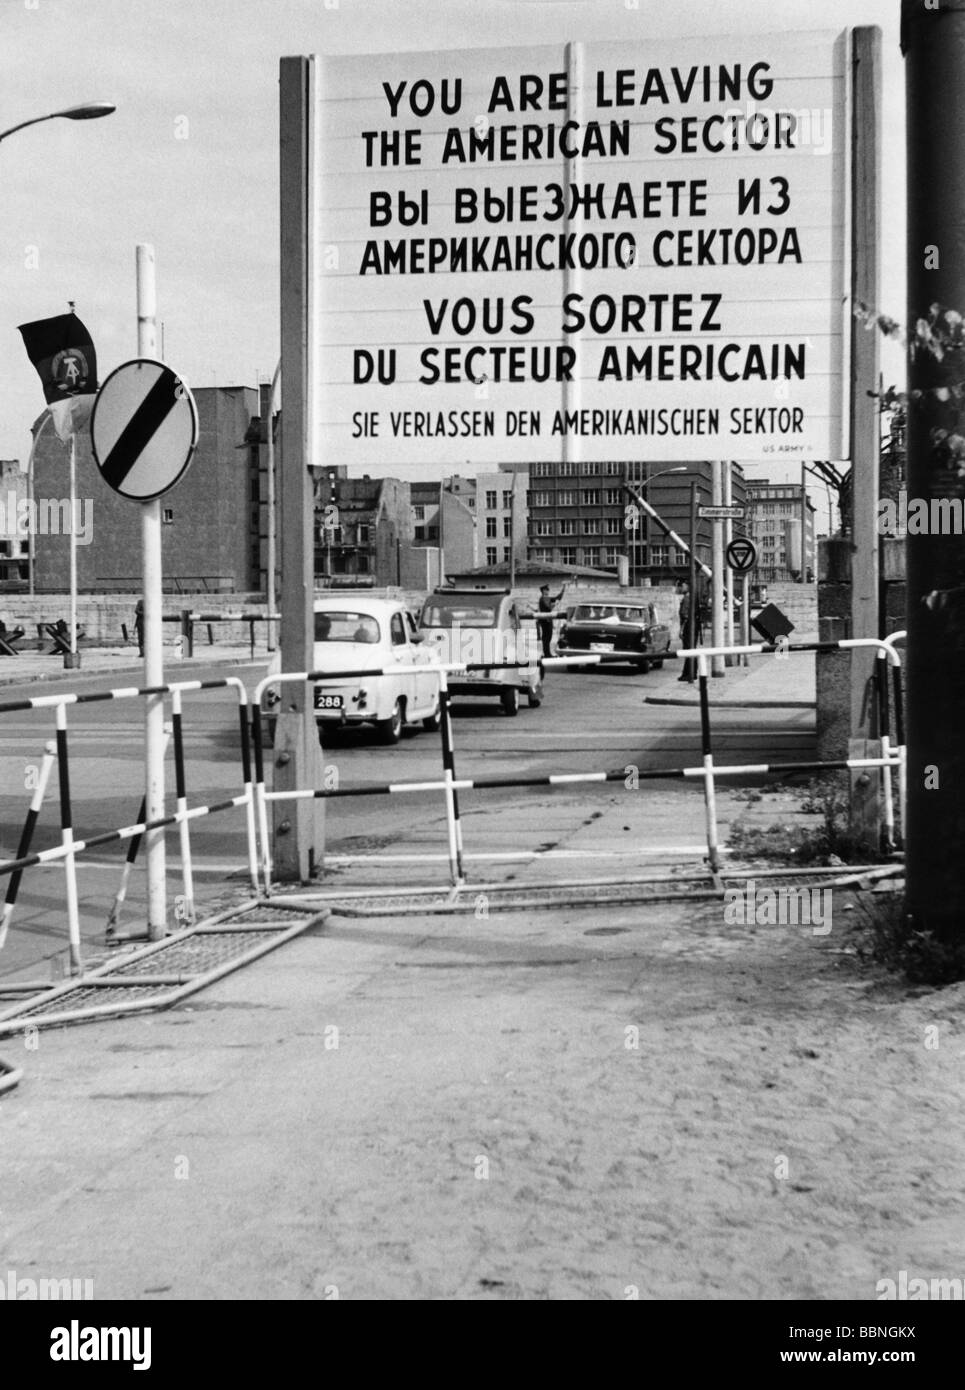 Geografie/Reisen, Deutschland, Berlin, Wall, Checkpoint Charlie, Grenzübergang für Allied Personal, Friedrichstraße, Schild "Sie verlassen den amerikanischen Sektor", 1963, Stockfoto